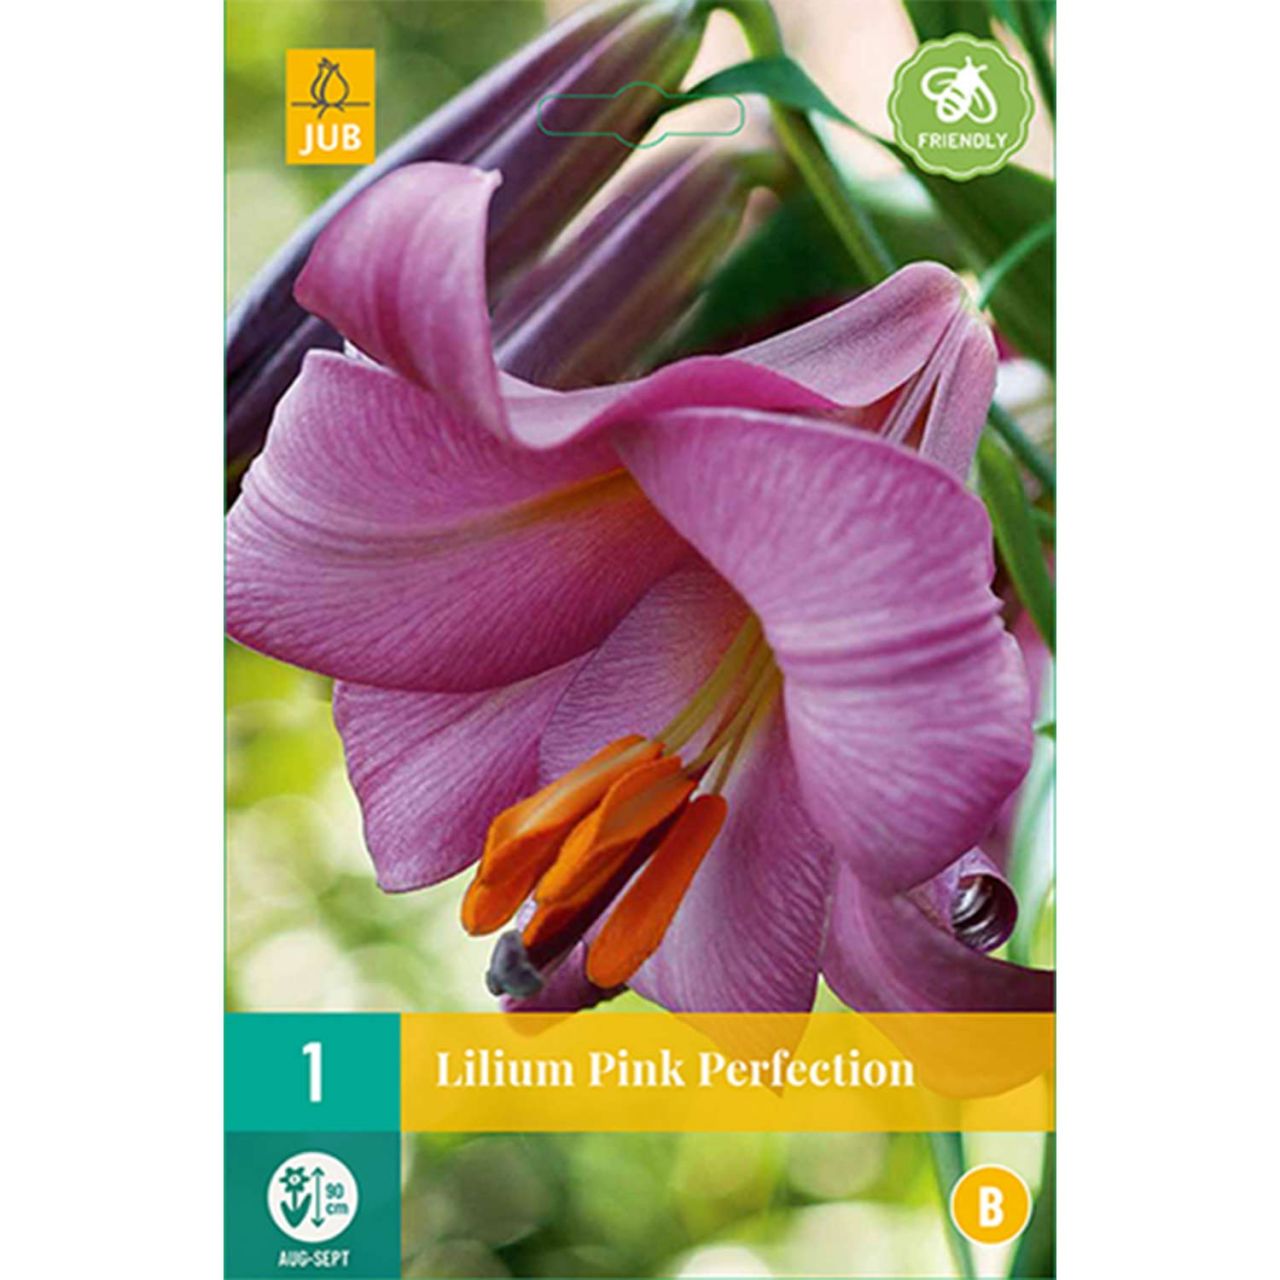 Kategorie <b>Frühlings-Blumenzwiebeln </b> - Lilie 'Pink Perfection' - Lilium